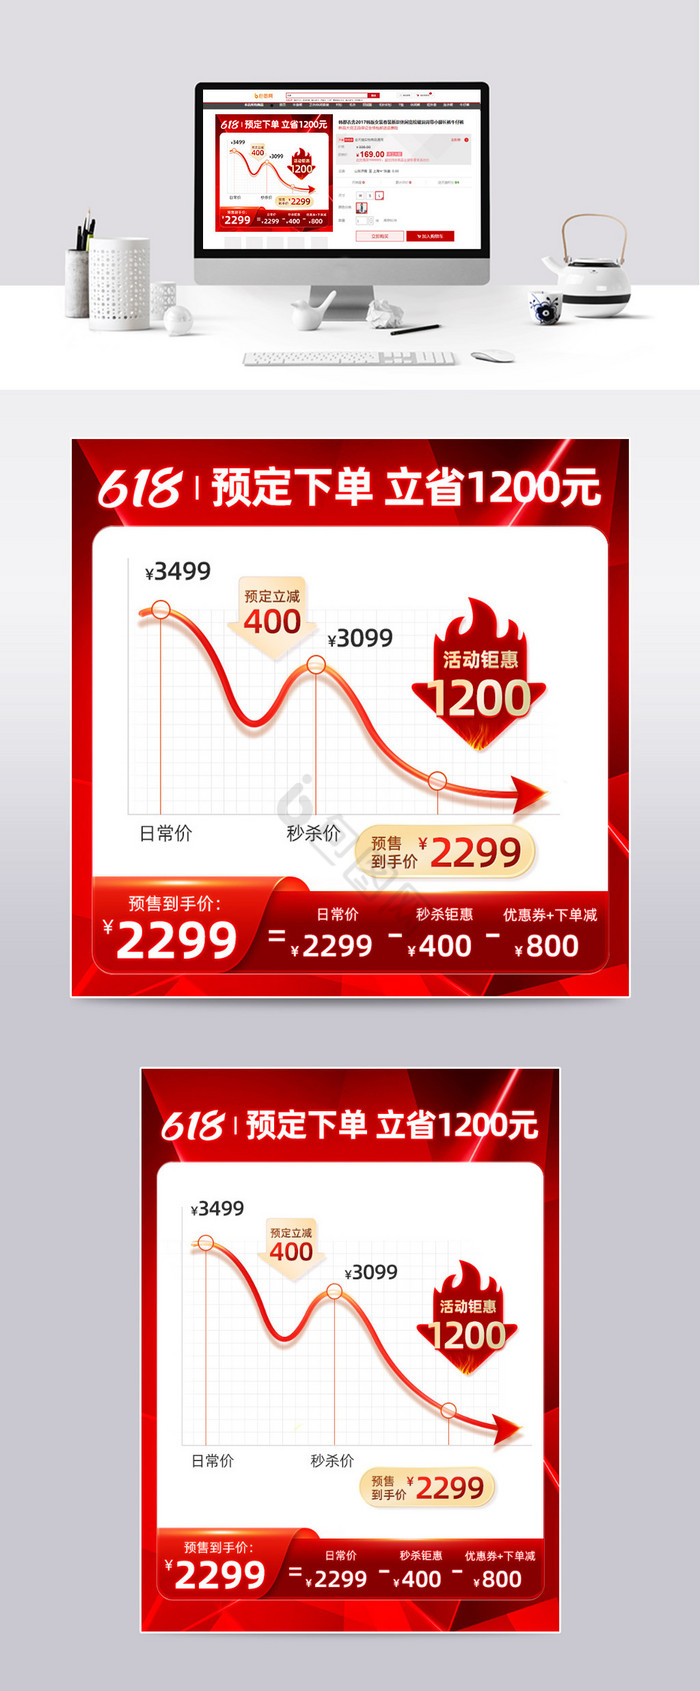 618炫彩预售价格曲线模板